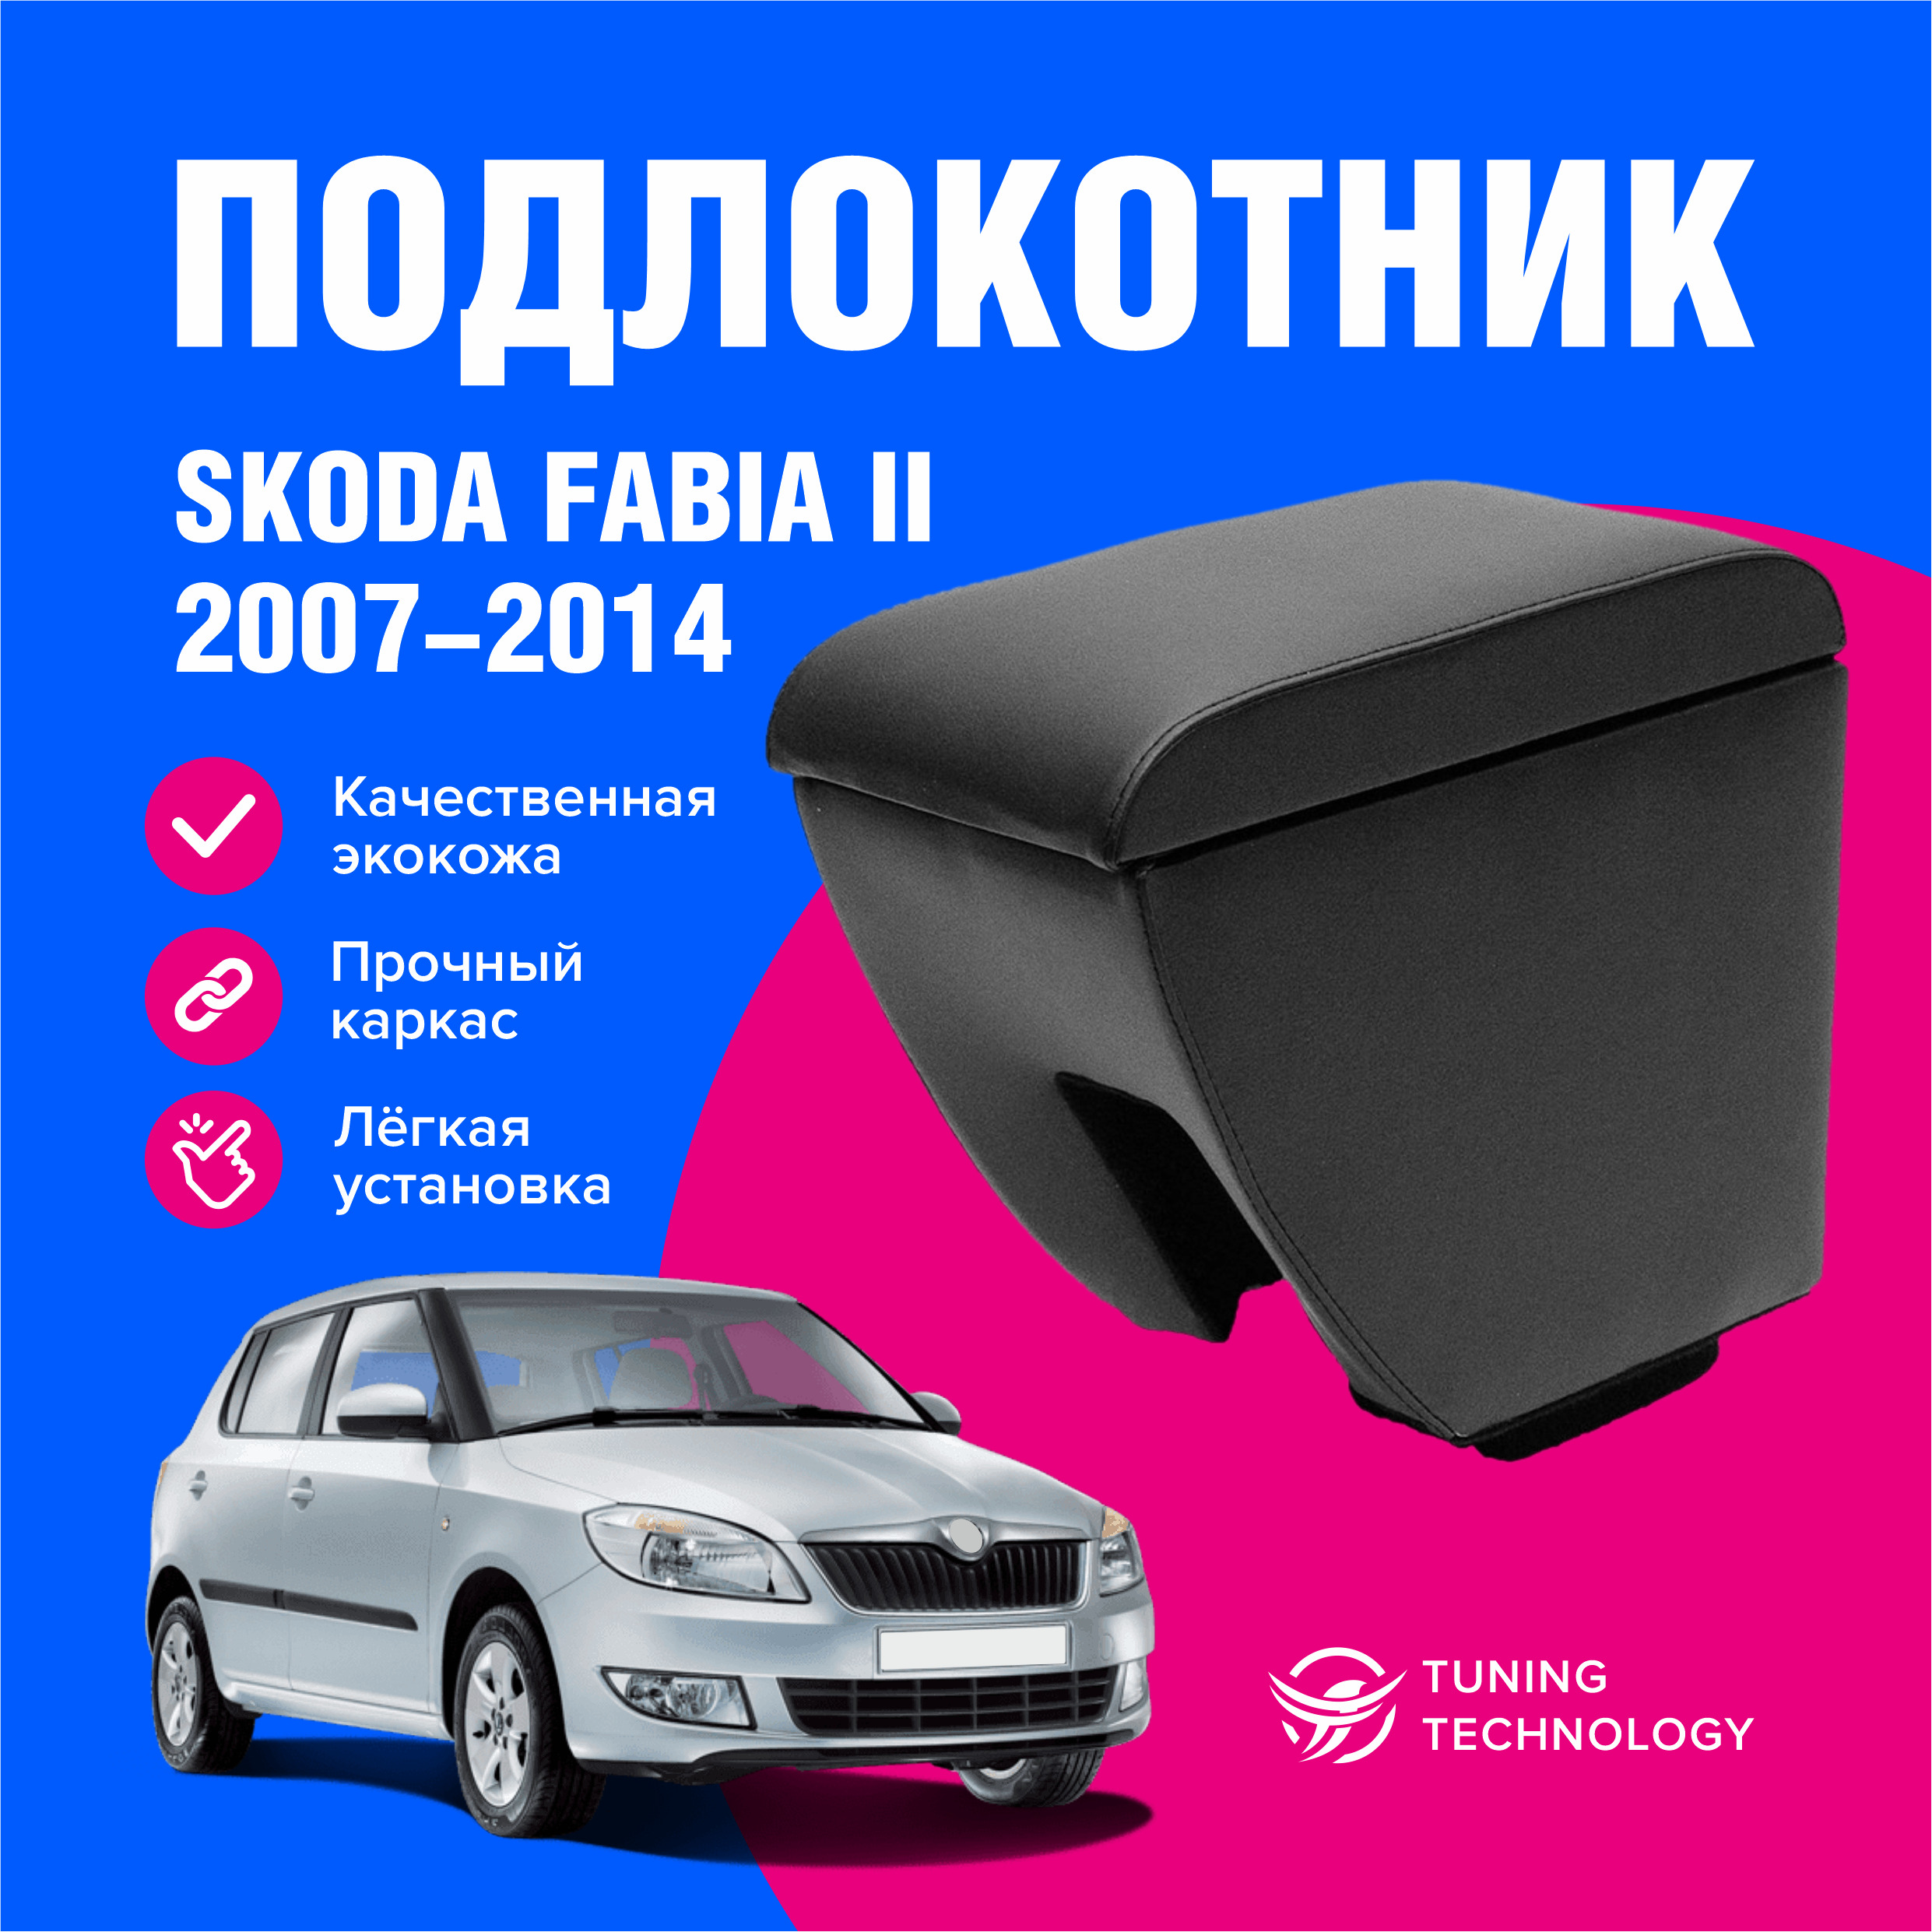 Очерёдность и сроки выхода абсолютно новых моделей Lada назвал глава Минпромторга РФ